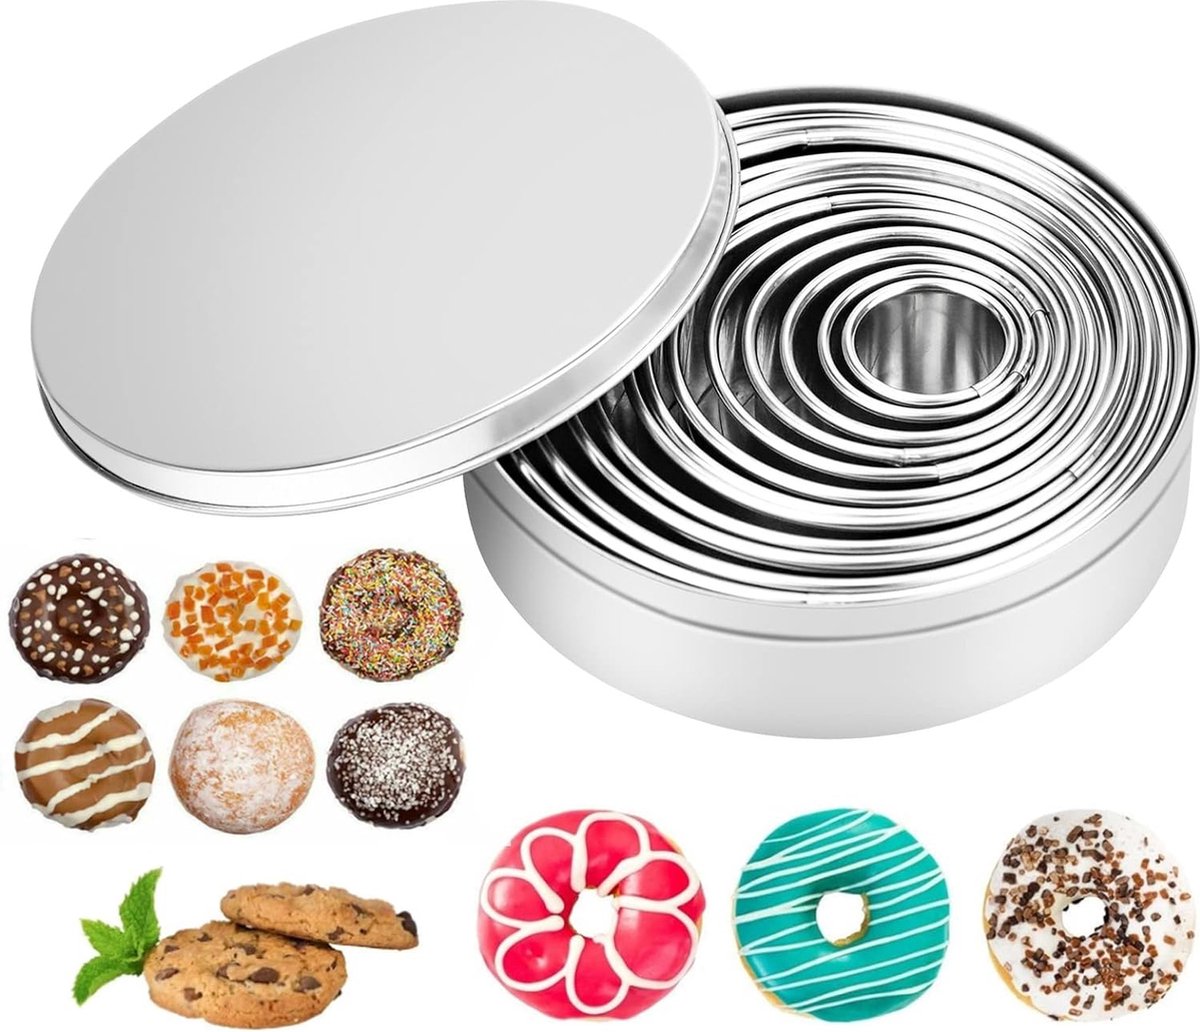 Pak van 12 ronde koekjesvormers, ronde koekjesvormers, ringen koekjesvormers, koekjesvormen 2,6-11,3 cm, koekjesvormers met opbergdoos, roestvrijstalen koekjesvormers voor koekjes, gebak, mousse, donuts